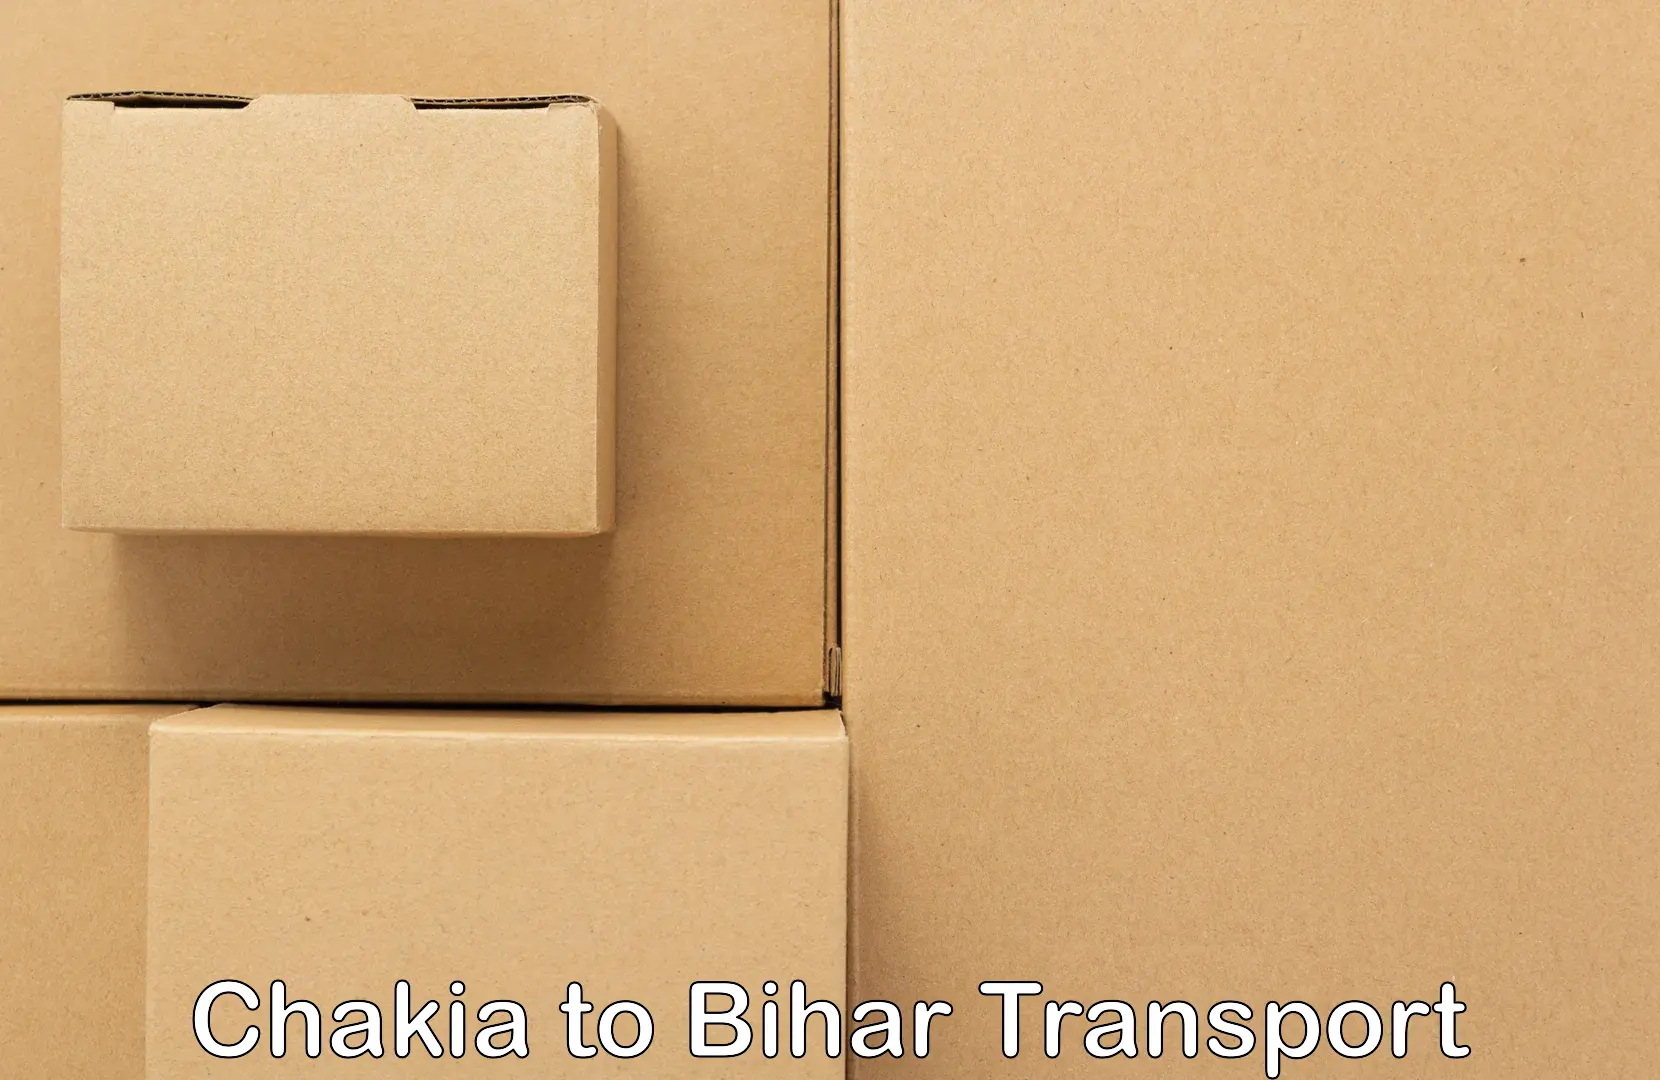 Two wheeler parcel service Chakia to Mahnar Bazar